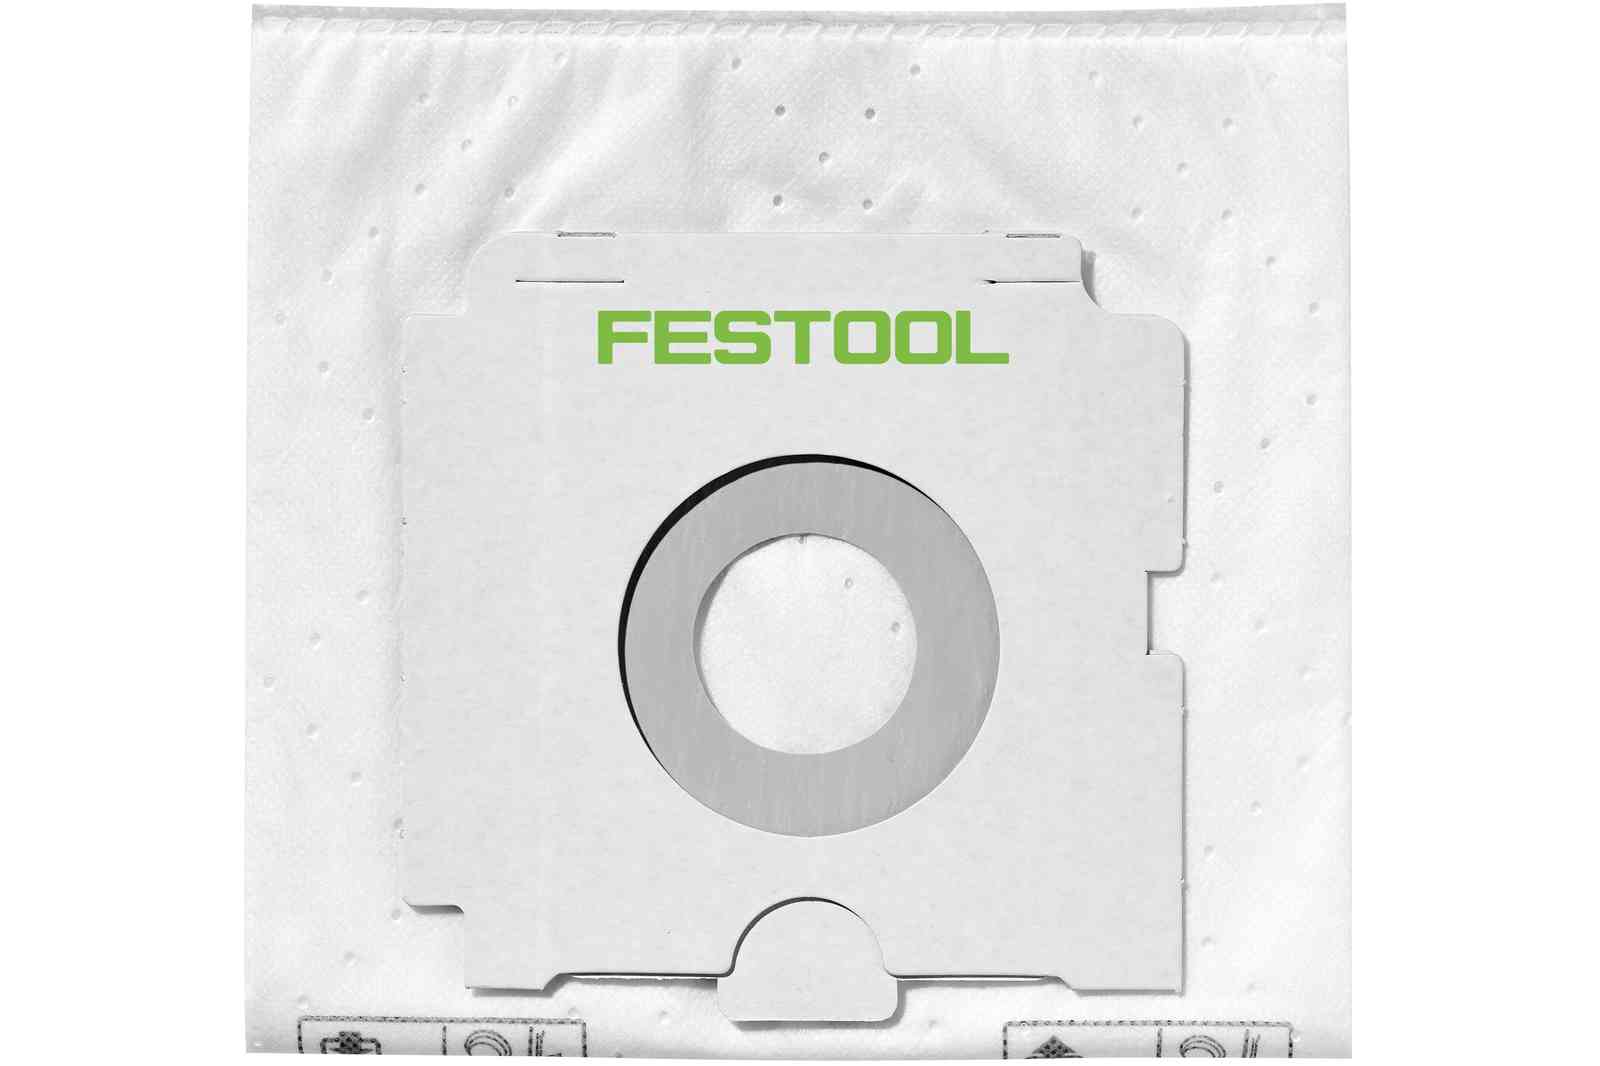 Festool 497539 SELFCLEAN Filter Bag for CT 48 E, 5 Pack